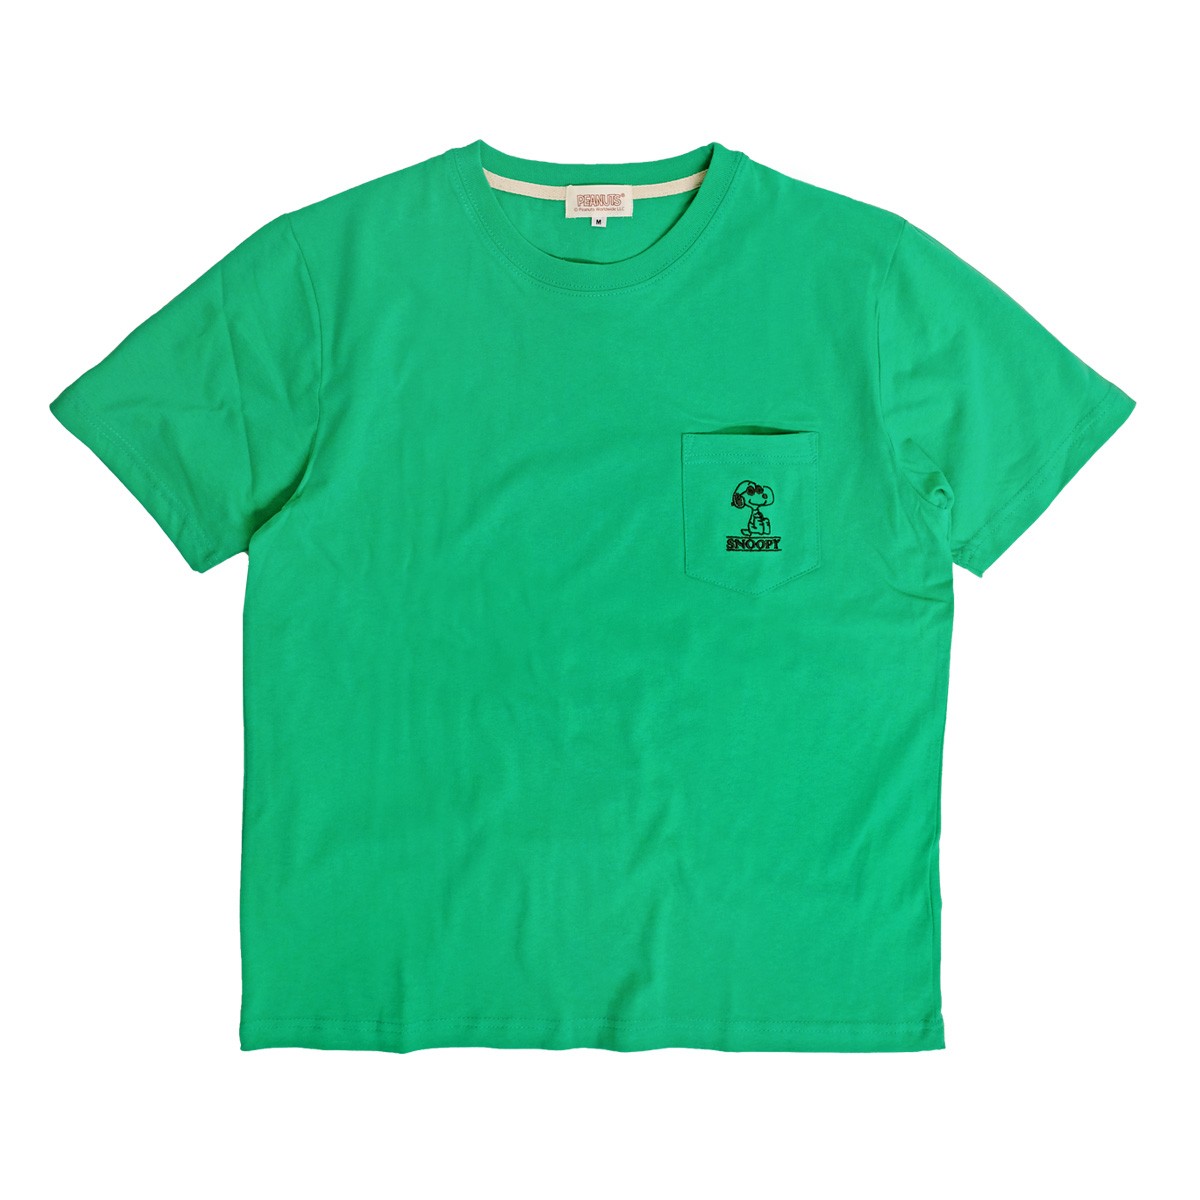 スヌーピー Tシャツ SNOOPY 刺繍 胸ポケット付き 半袖Tシャツ PEANUTS ポケットTシャツ クルーネック ユニセックス TSS-418